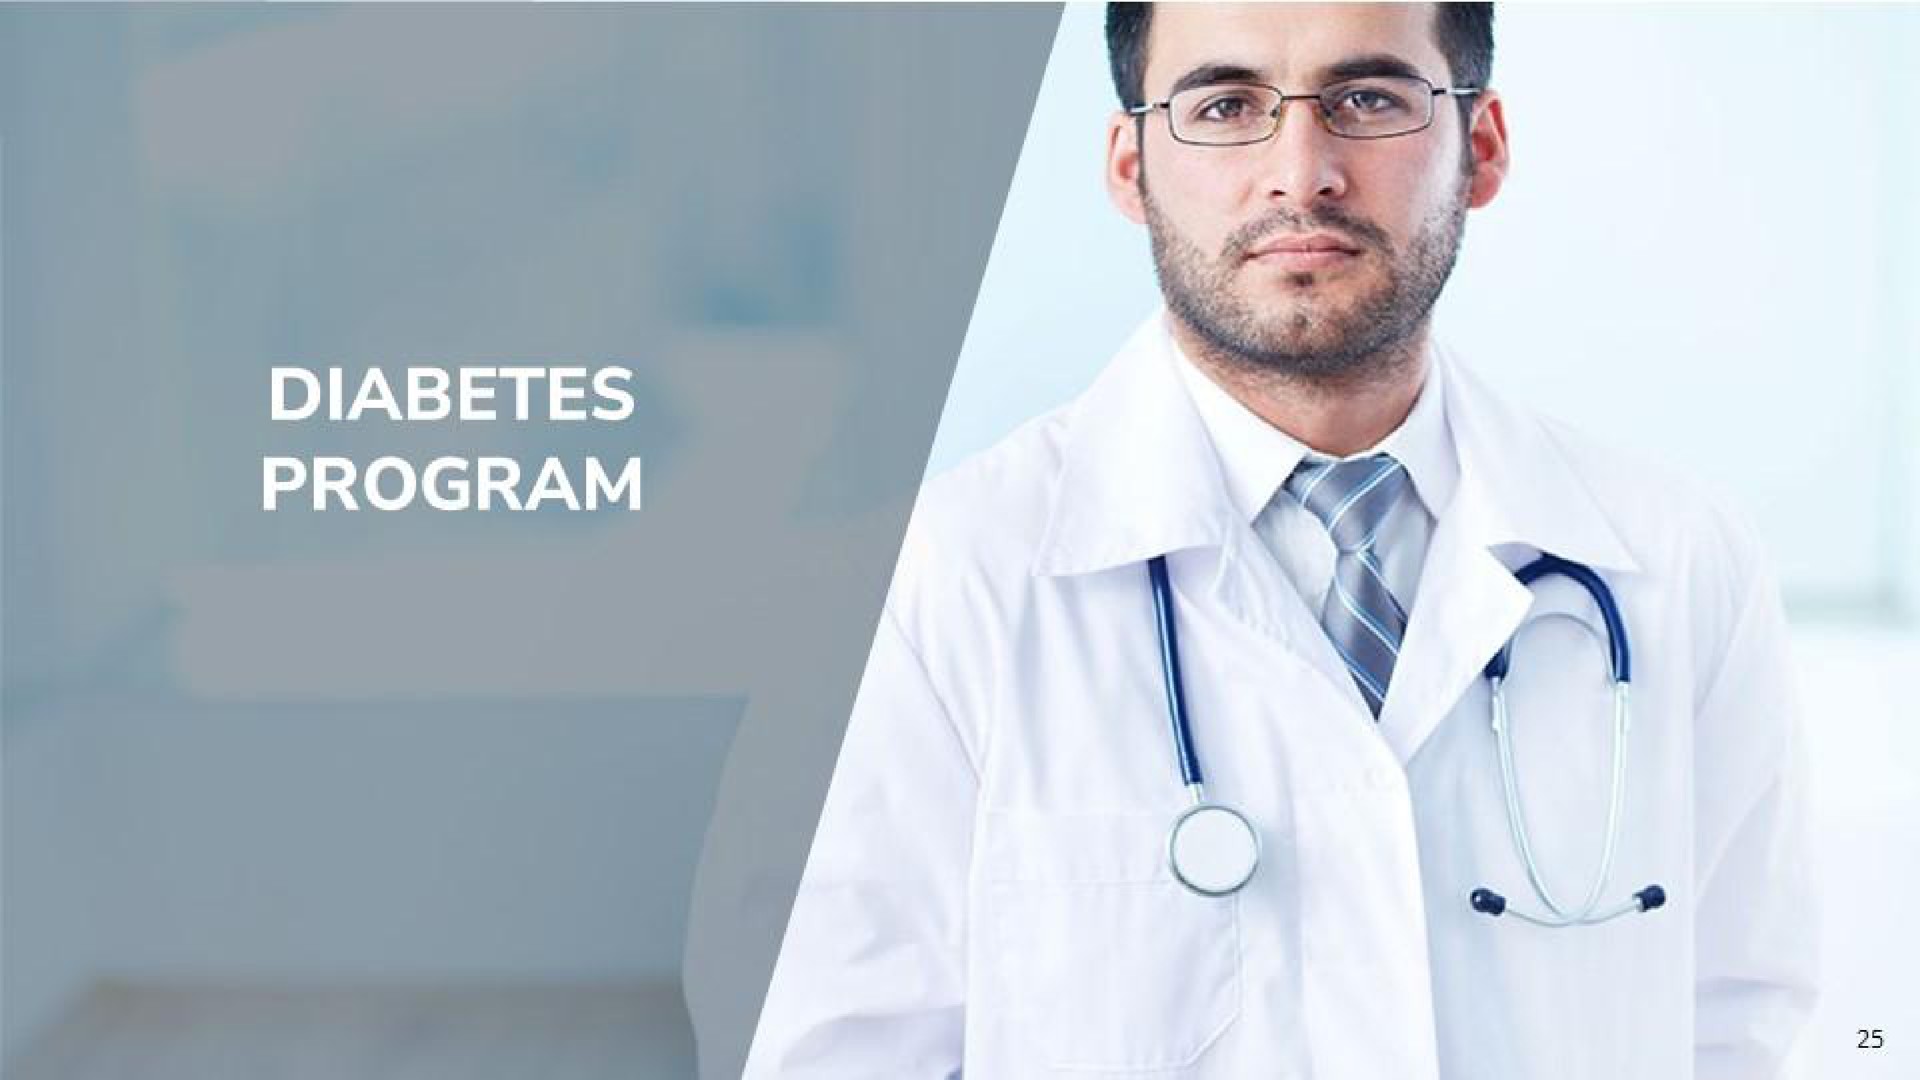 diabetes program | Genprex